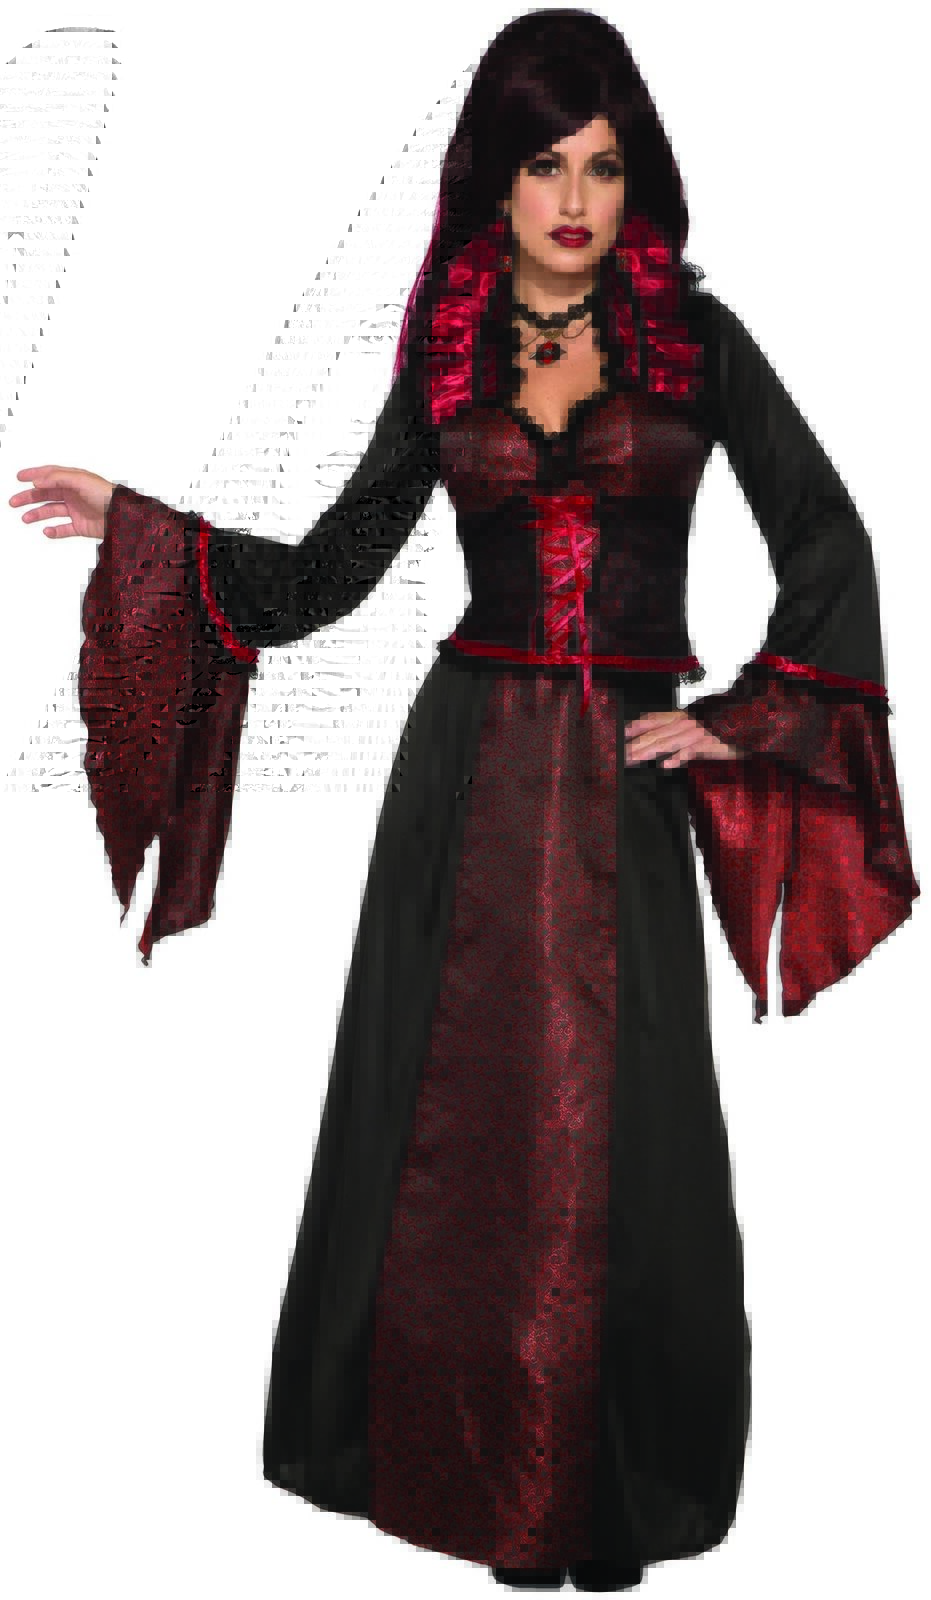 Vampiress Countess Crimson Women's Halloween Costume Vampire Queen Fancy Dress